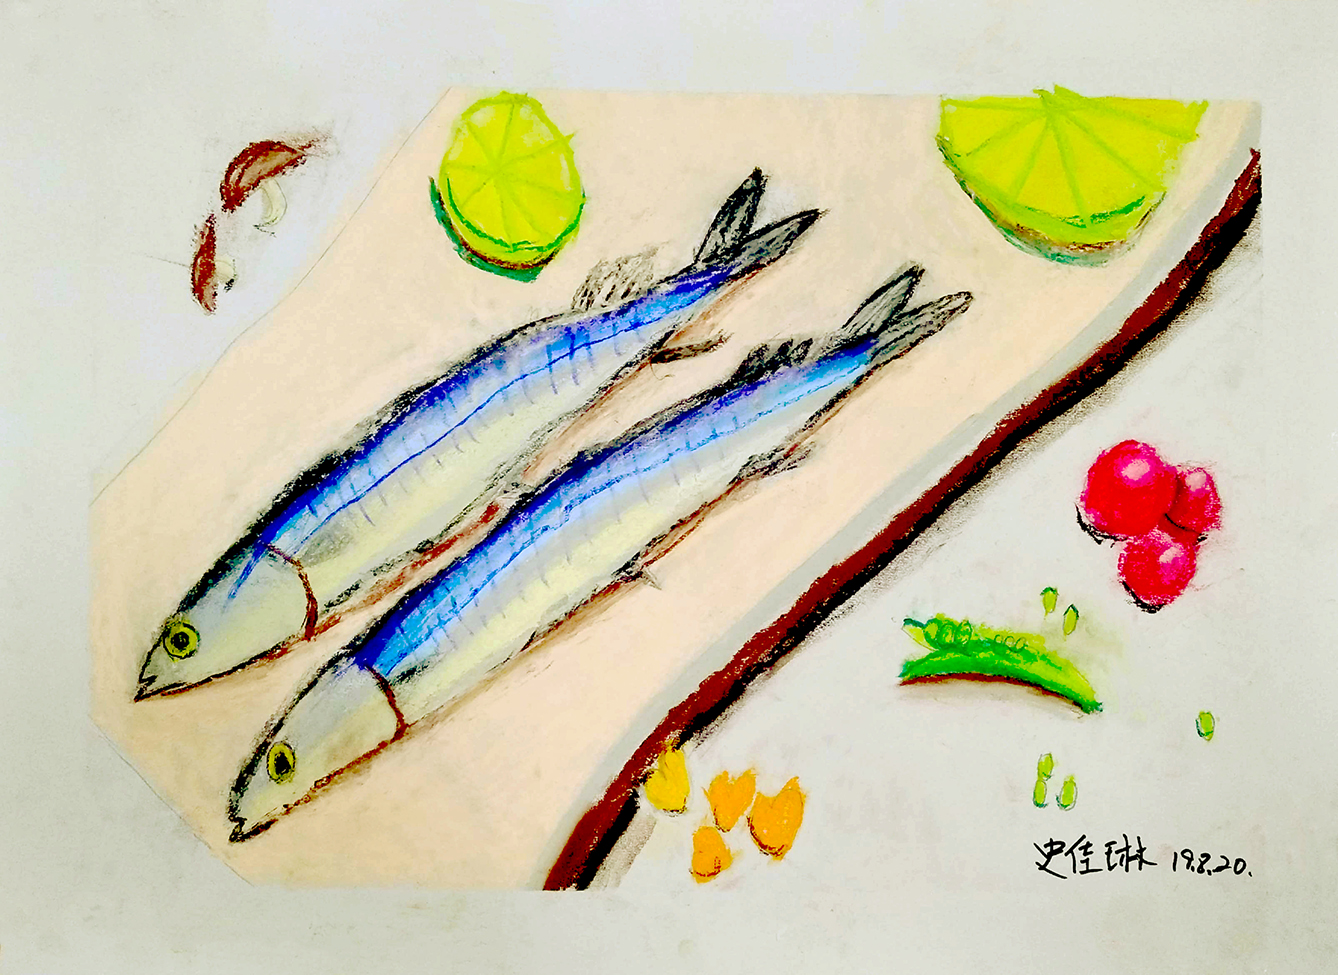 一格画画少儿美术教育学院小学员史佳琳色粉绘画作品秋刀鱼